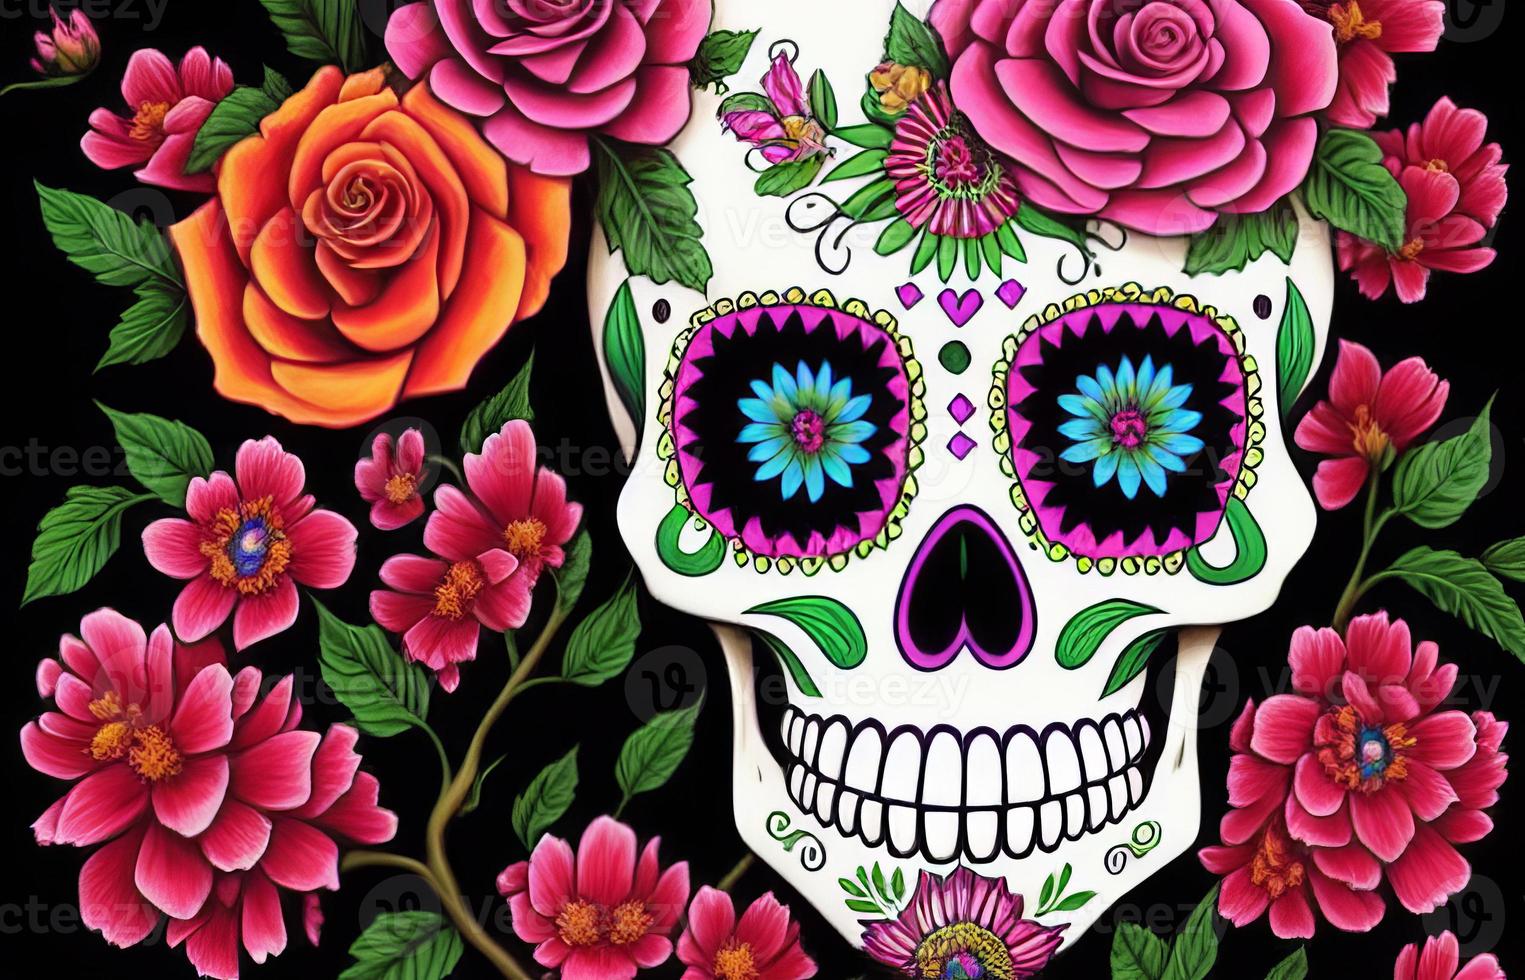 dia de los muertos traditionell calavera socker skalle dekorerad med blommor de dag av de död- illustration foto